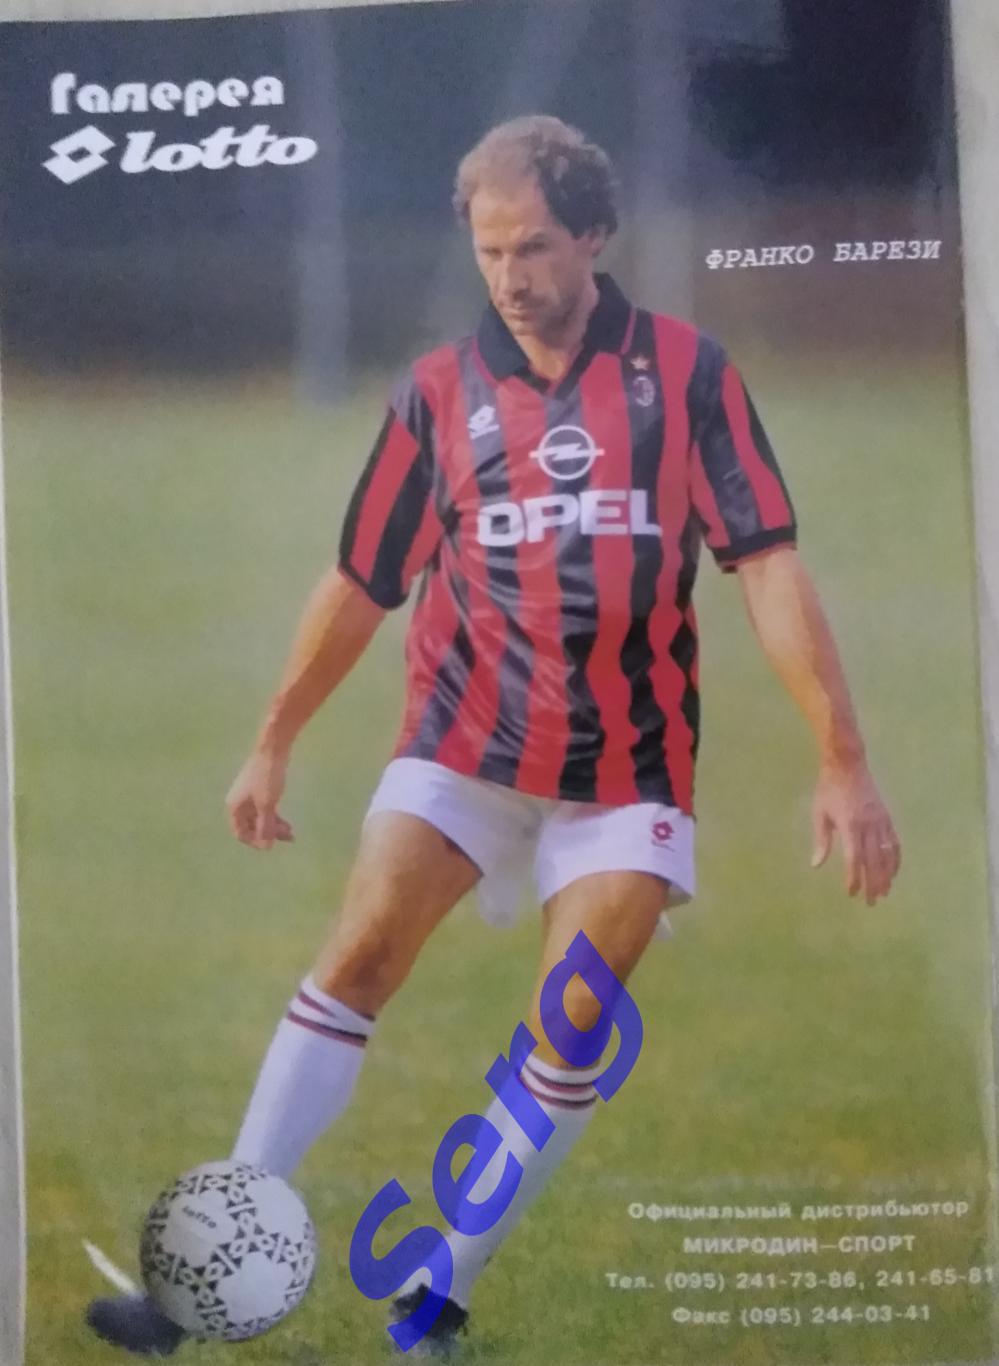 Журнал Его Величество Футбол №1 1996 год 5